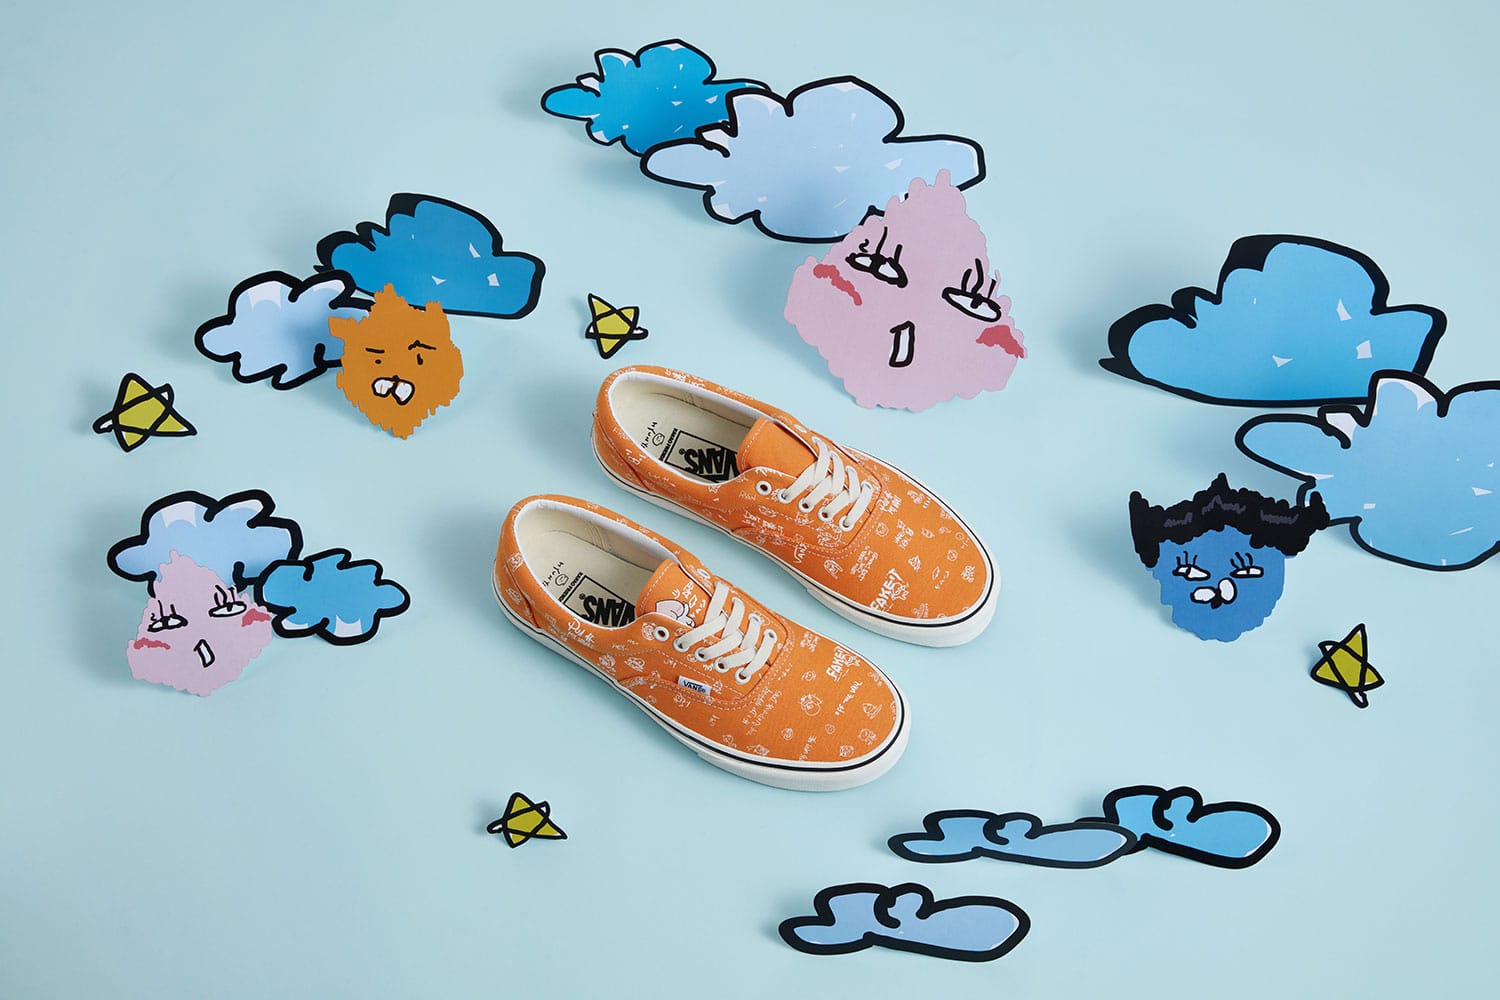 Kakao Friends x Vans Release Sneaker 